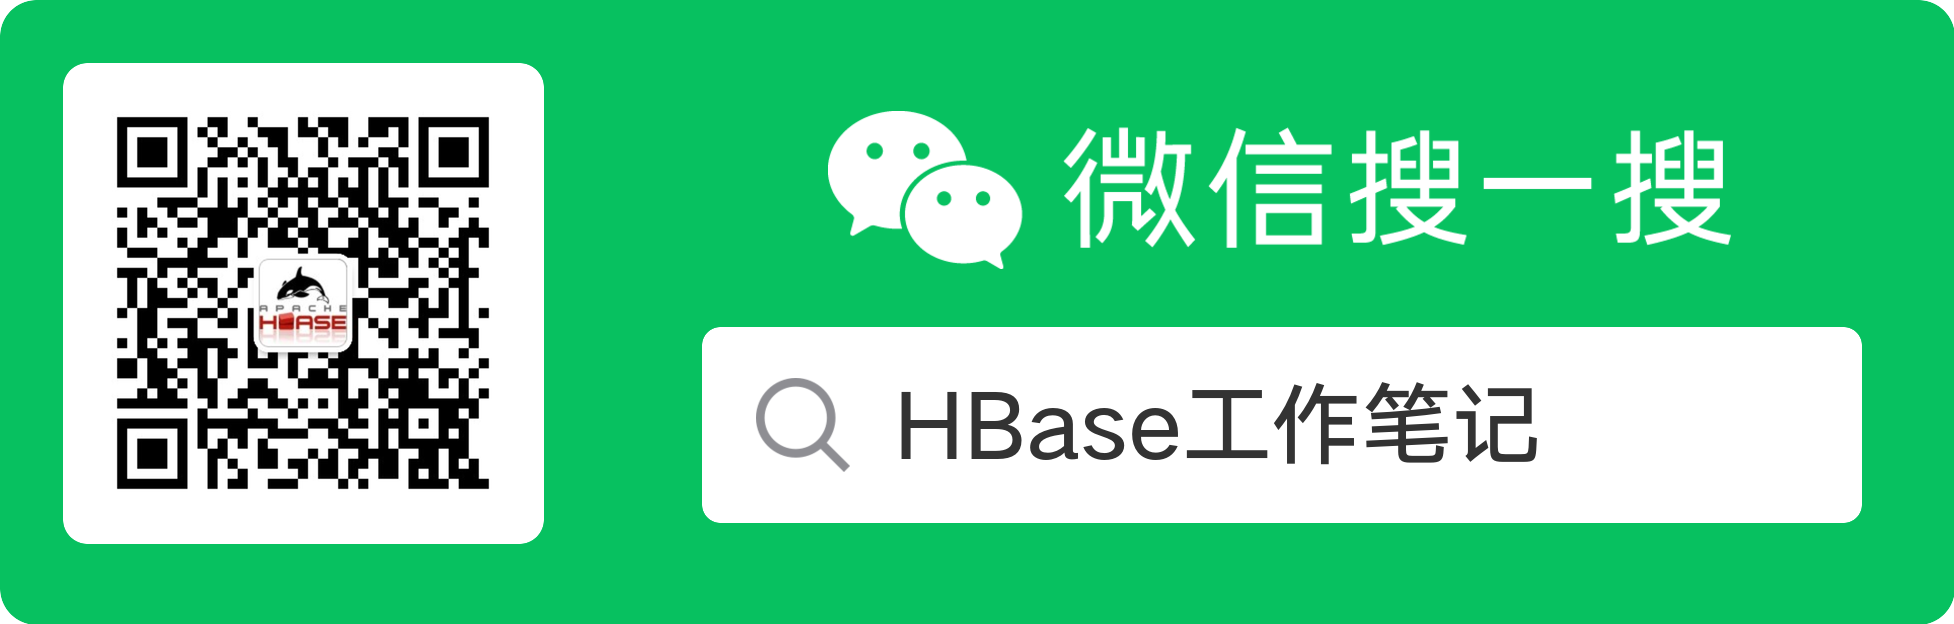 HBase-2.2.3源码编译-Windows版